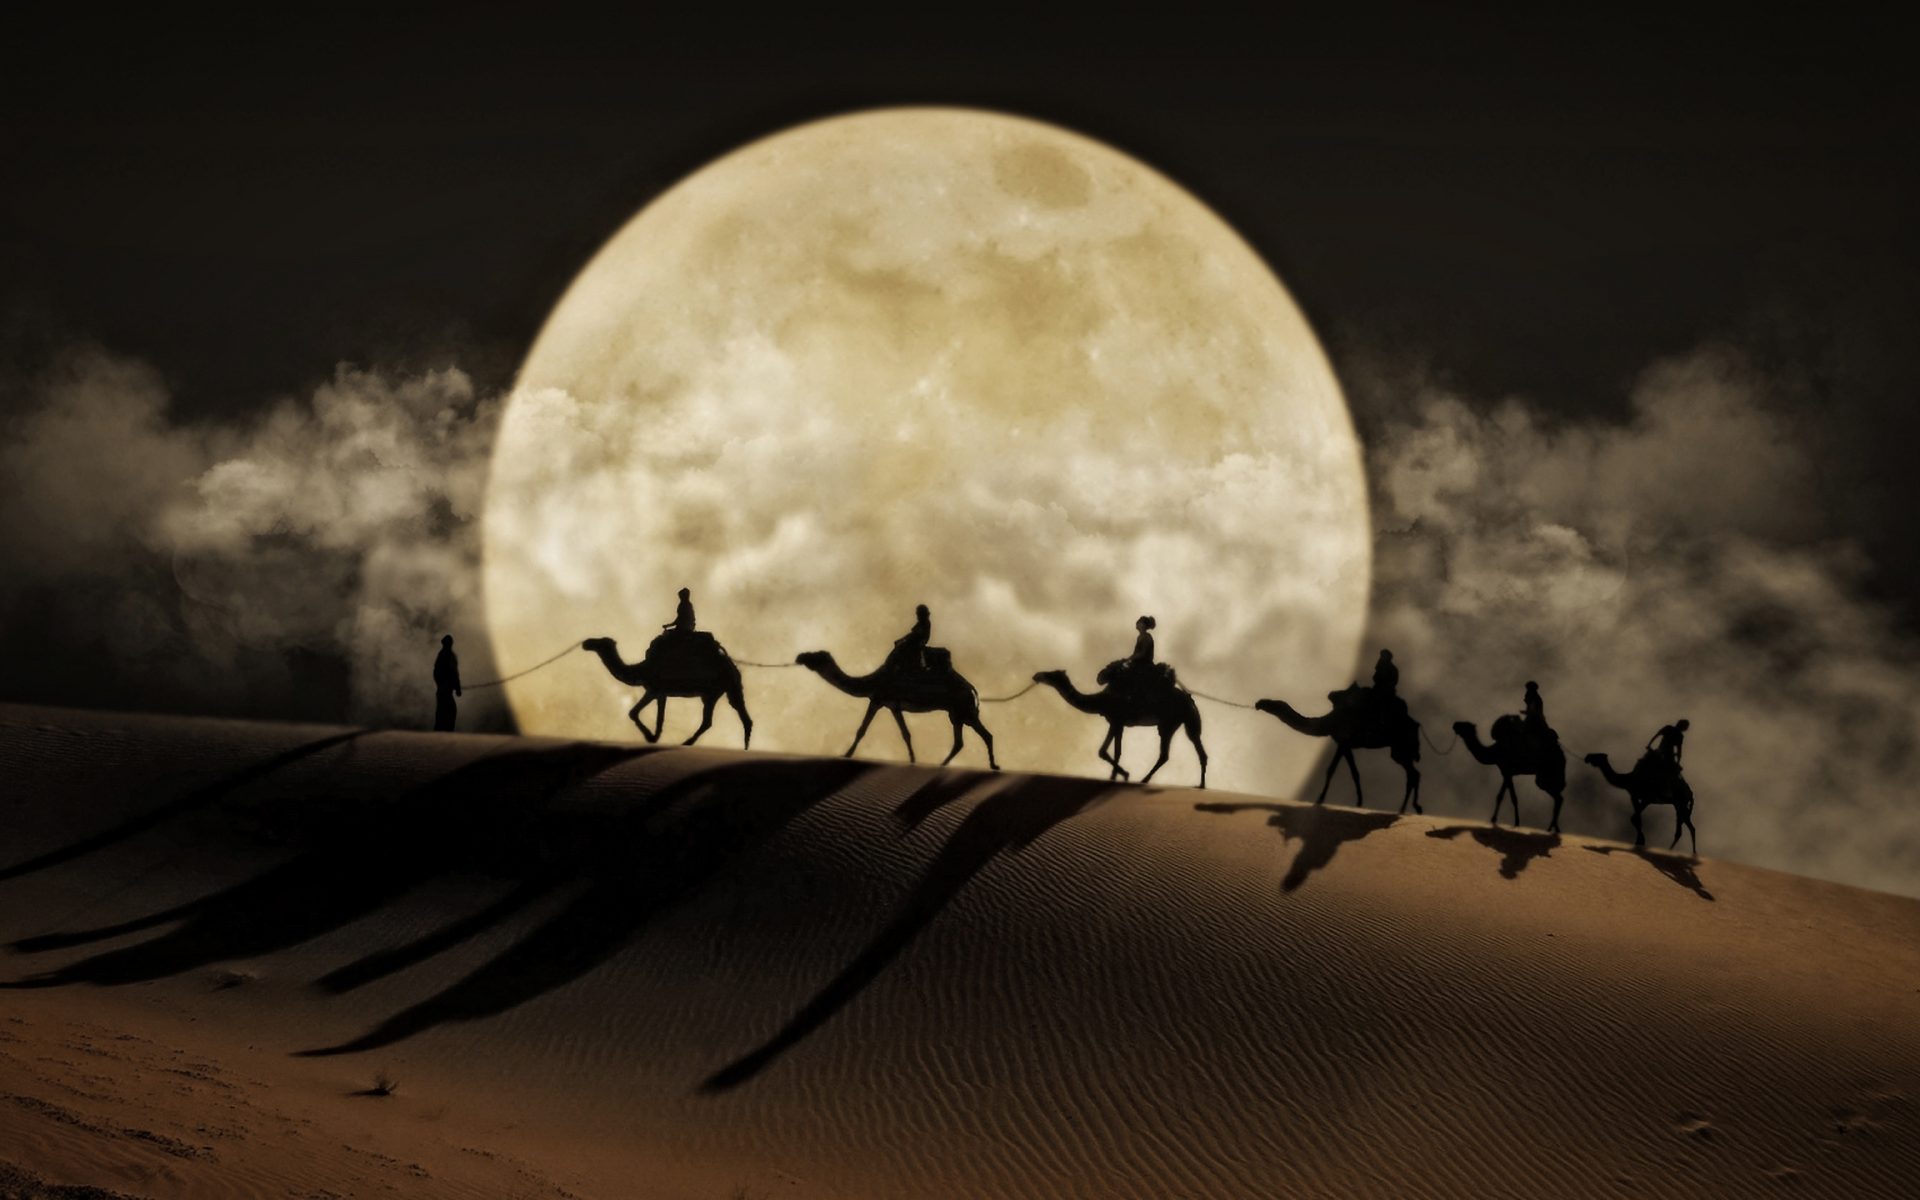 Скачать обои бесплатно Луна, Пустыня, Верблюды, Силуэт, Художественные картинка на рабочий стол ПК